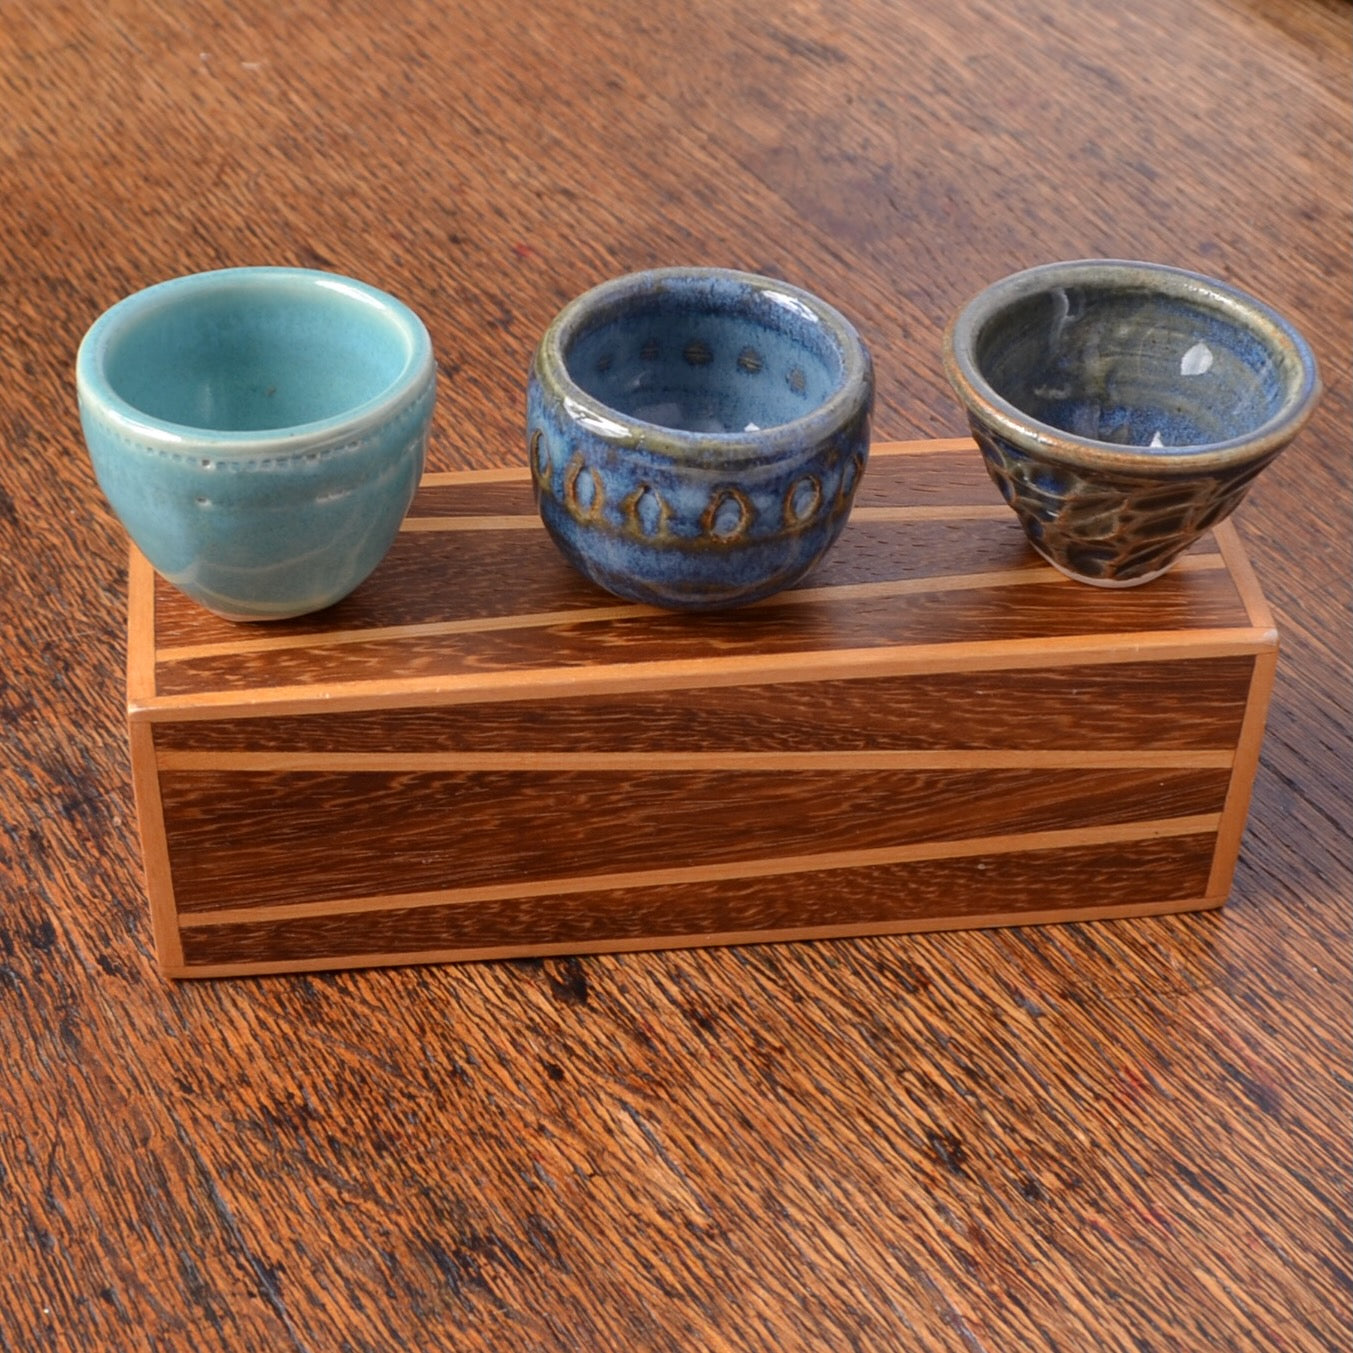 tiny pottery bowls